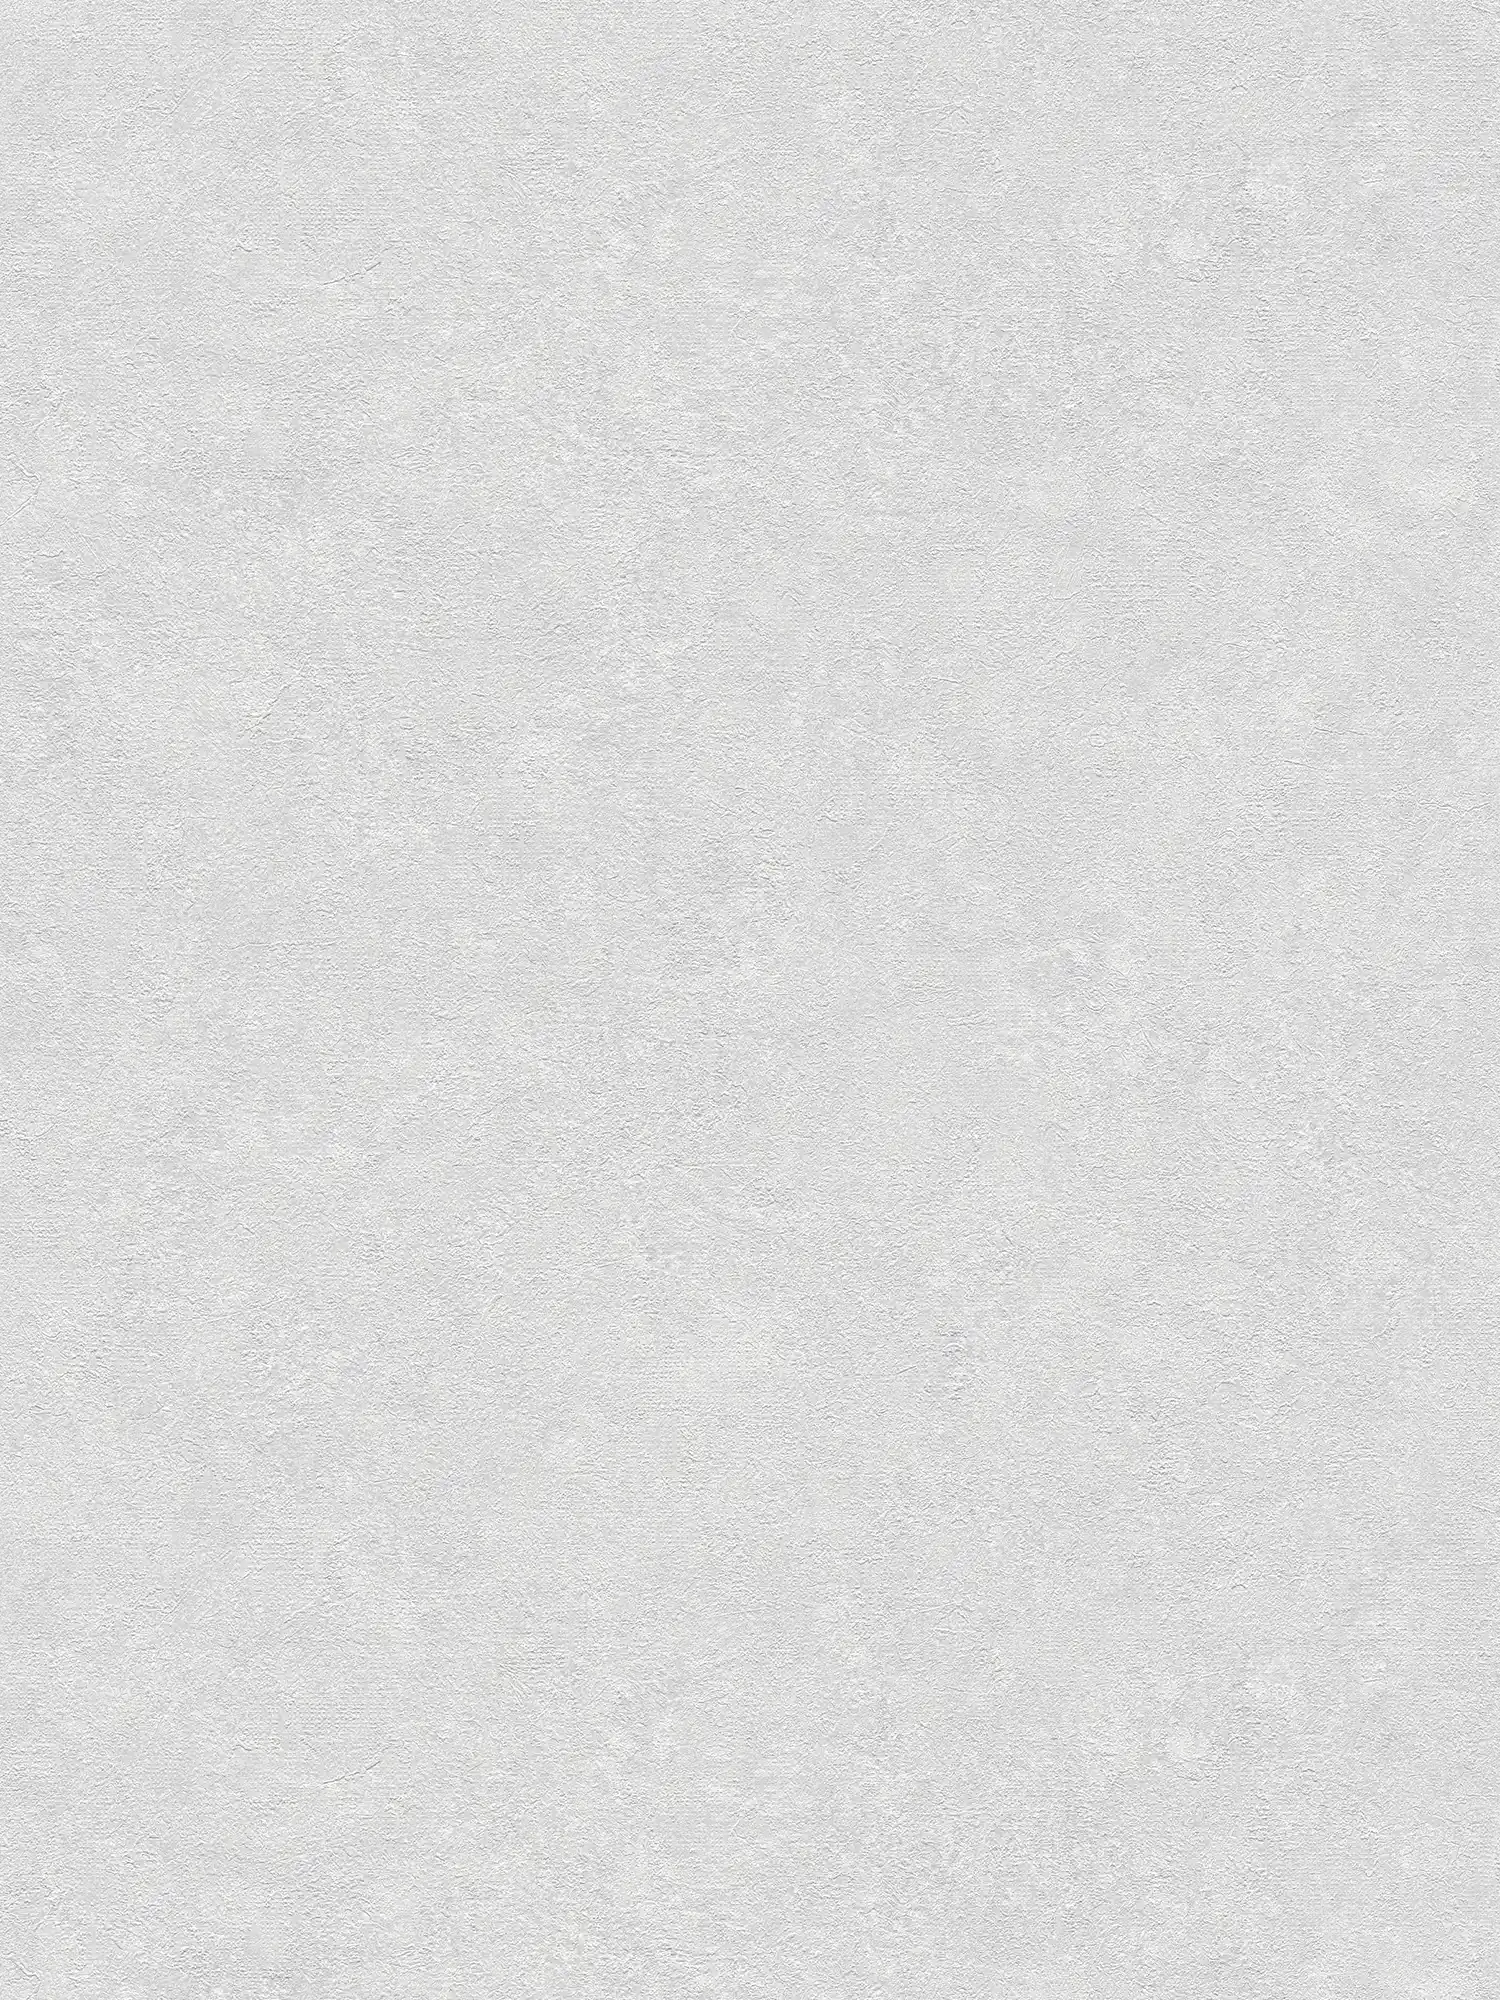 Carta da parati a tinta unita con effetto intonaco - grigio, bianco
